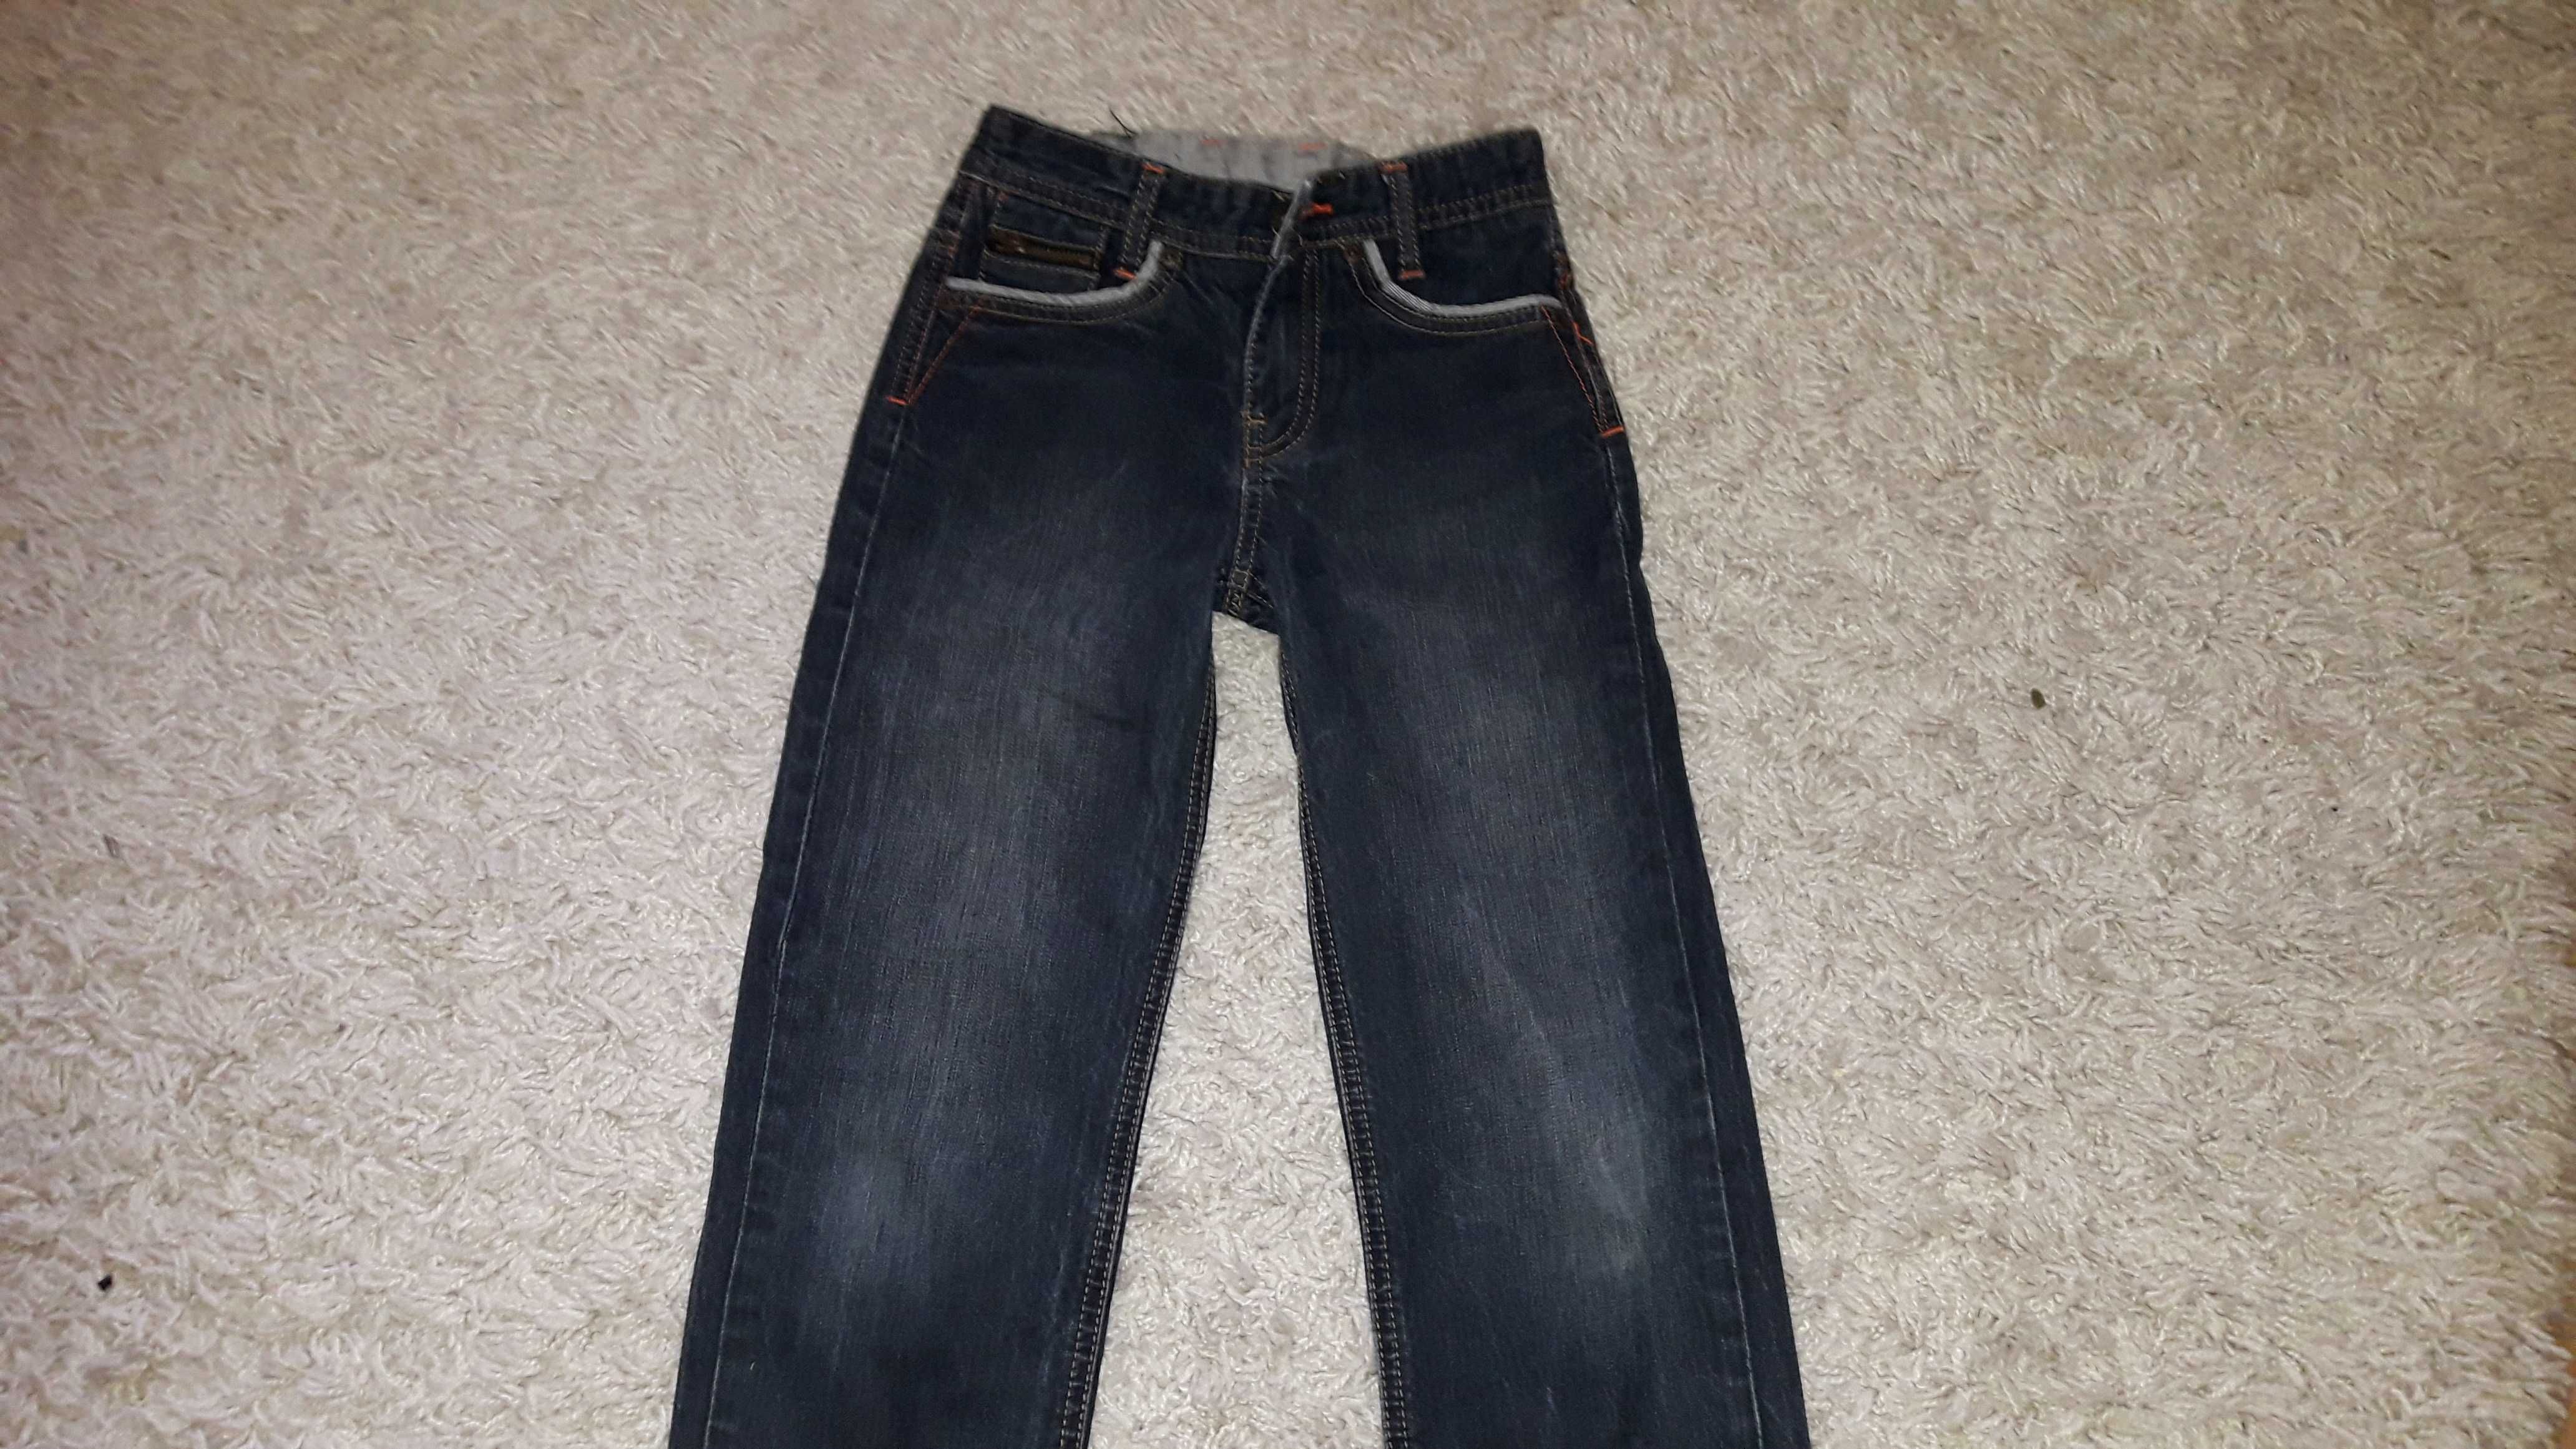 Spodnie TED BAKER dla chłopca 140 -7-8 lat jeansy